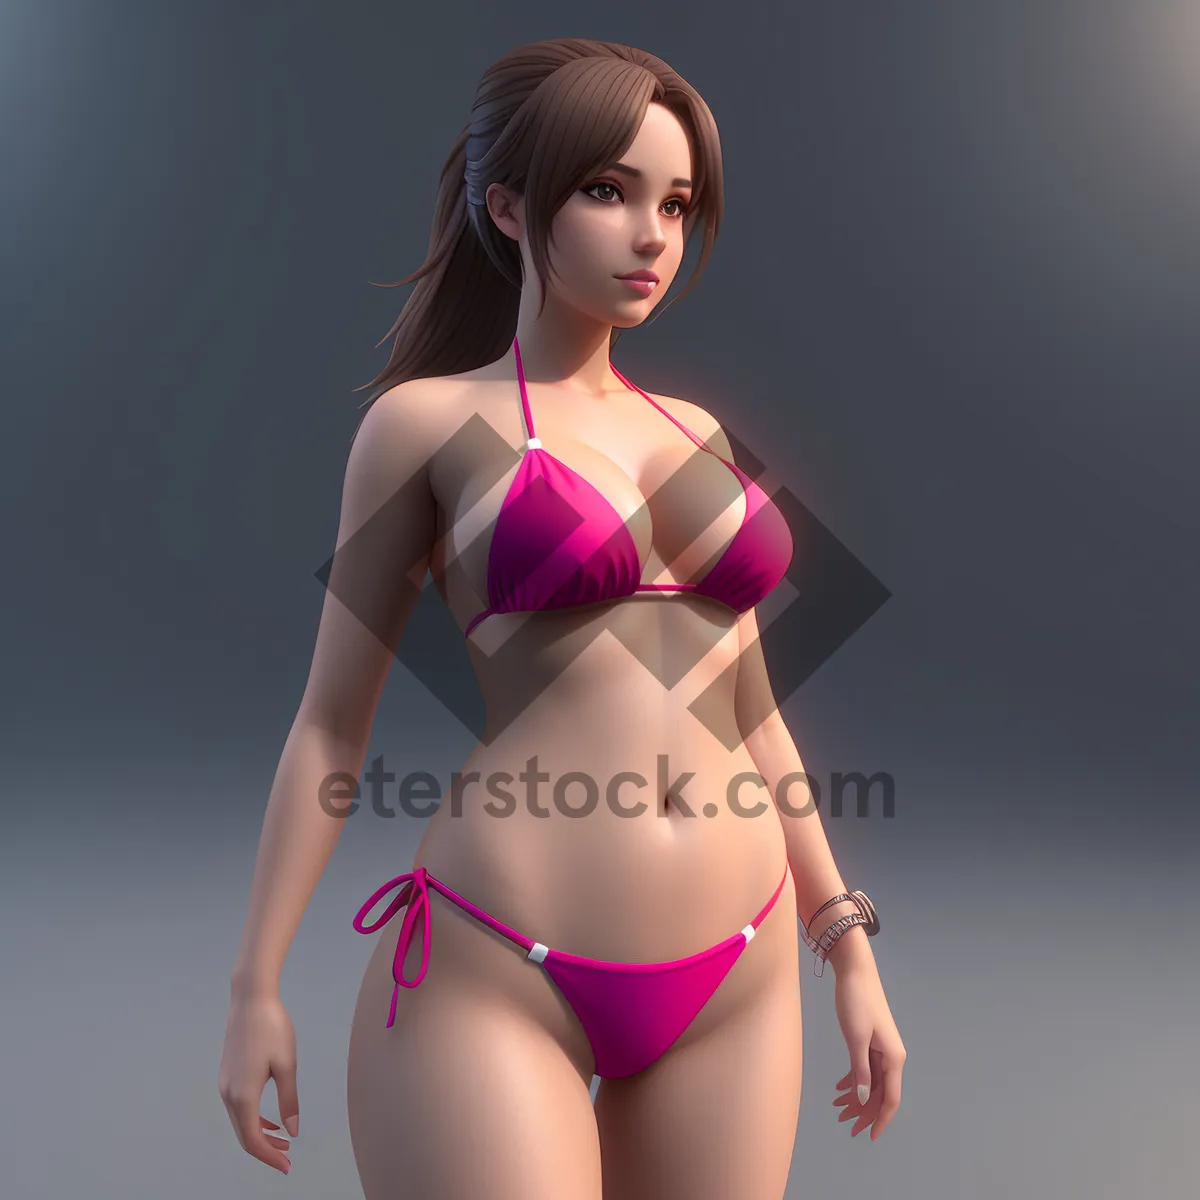 Picture of Seductive Swimwear Showcase: Attractive Bikini Model in Sensual Pose